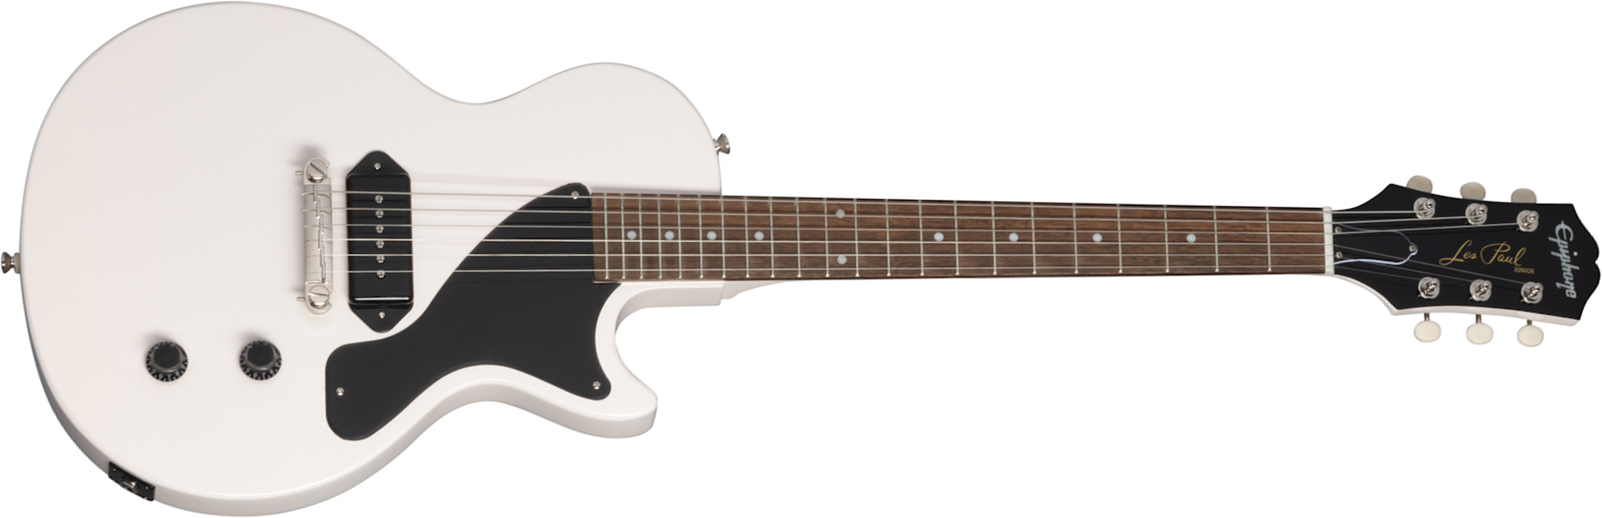 Epiphone Billie Joe Armstrong Les Paul Junior Signature S P90 Ht Lau - Classic White - Single cut electric guitar - Main picture